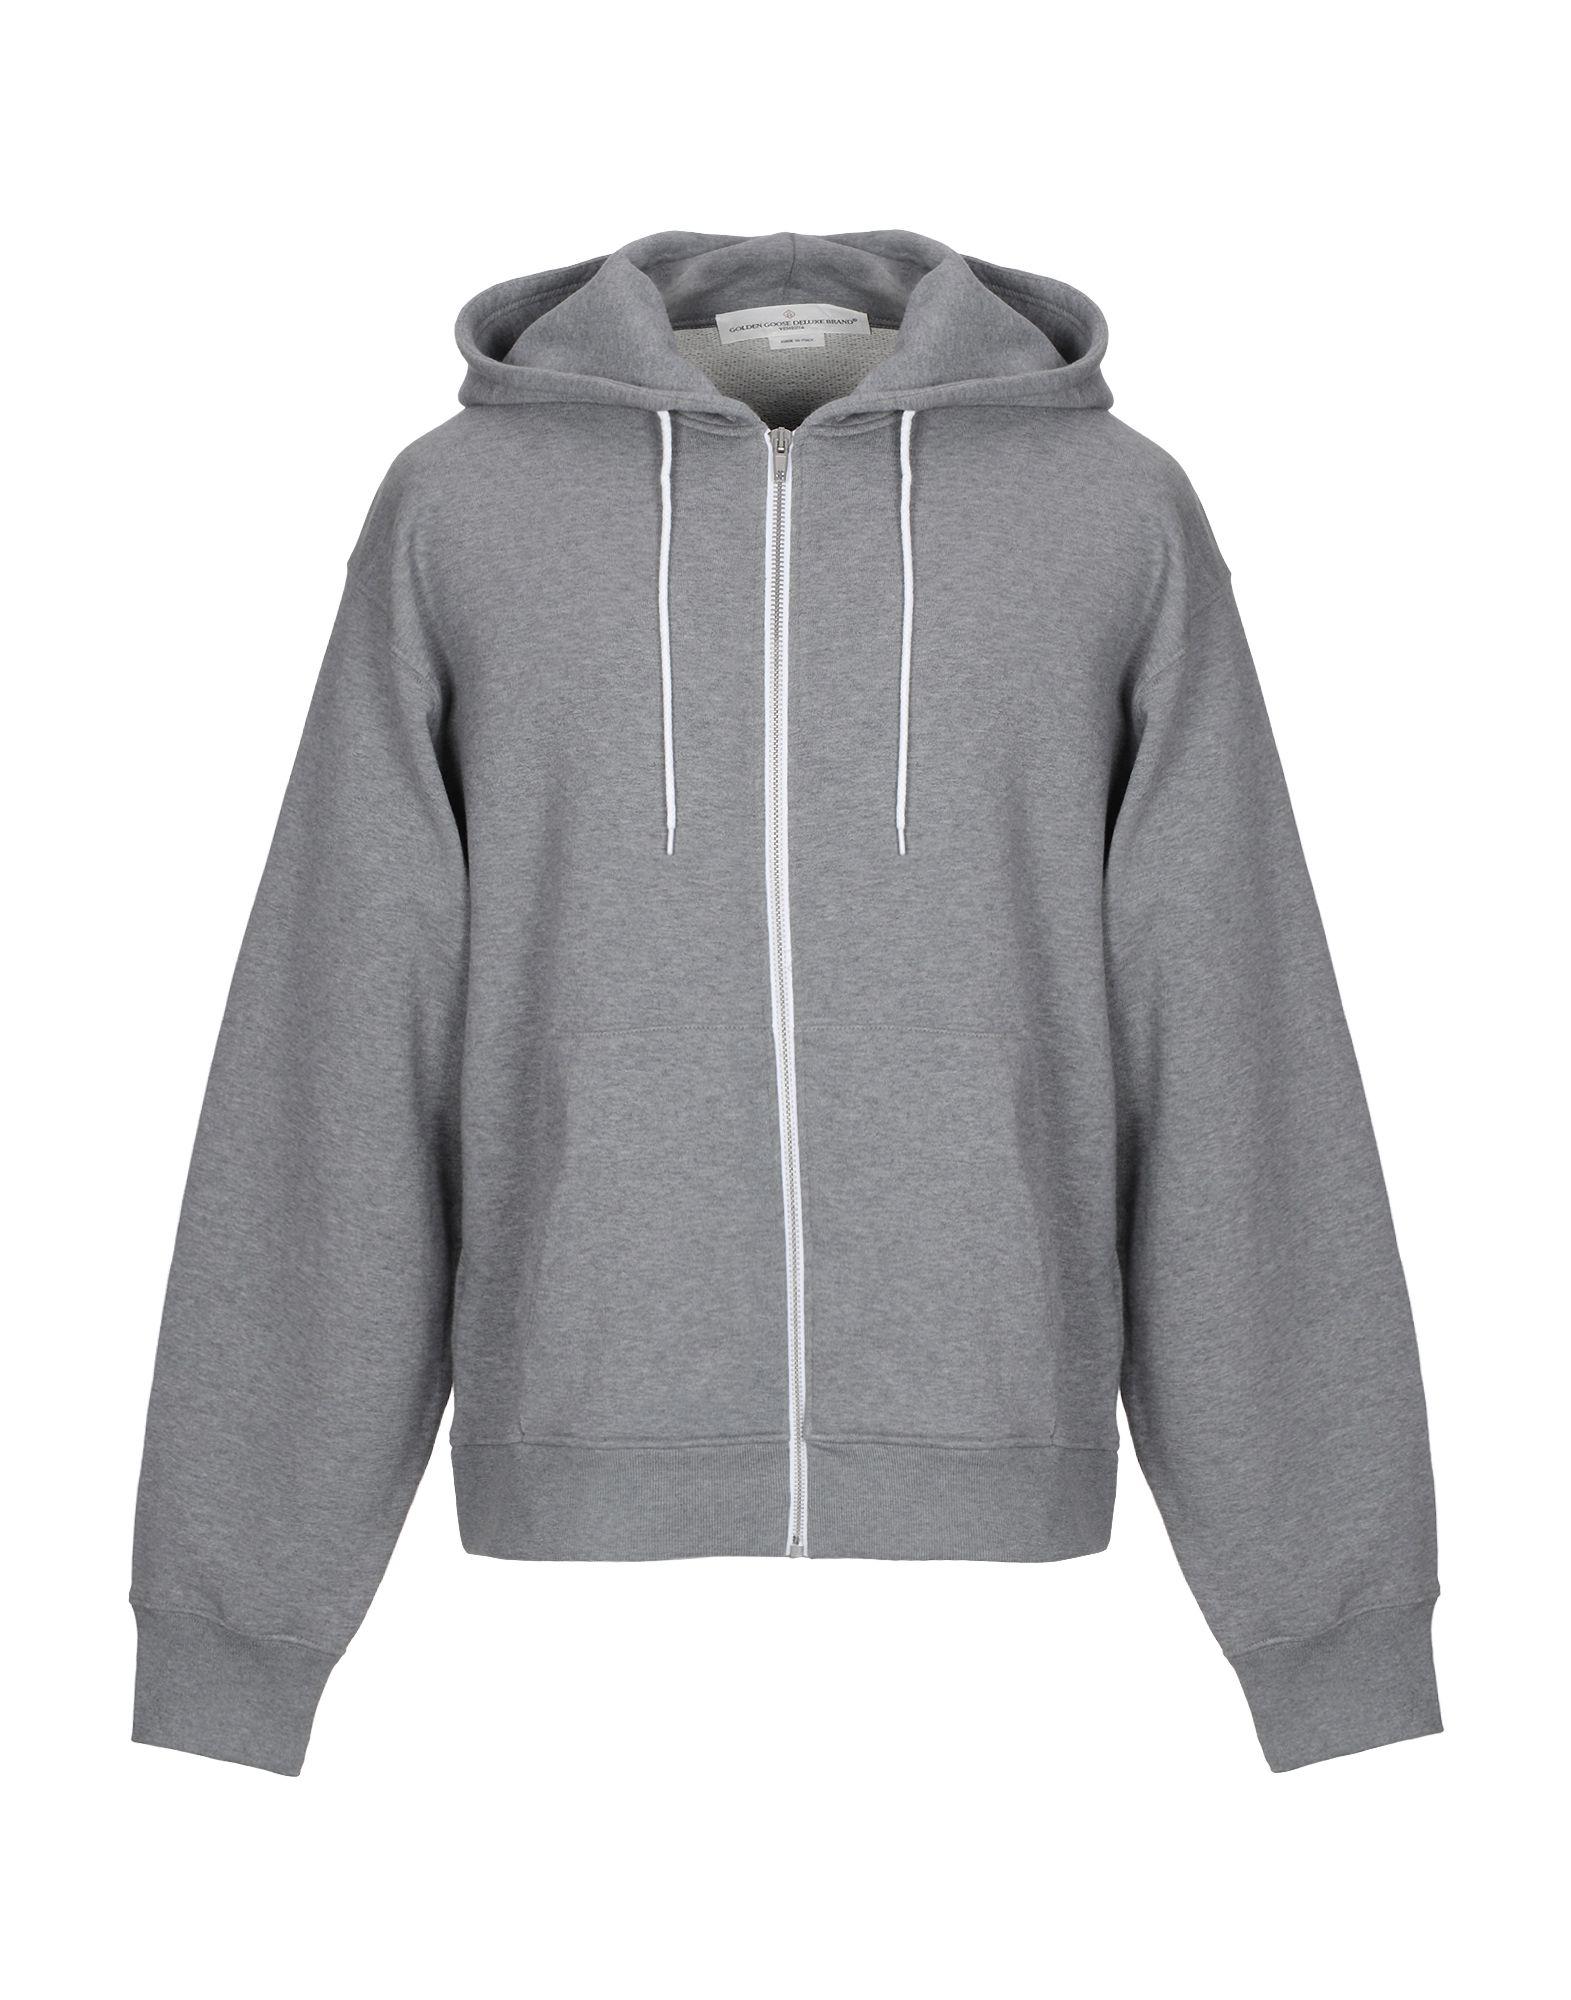 Golden Goose Deluxe Brand Cotton Sweatshirt in Grey (Gray) for Men - Lyst